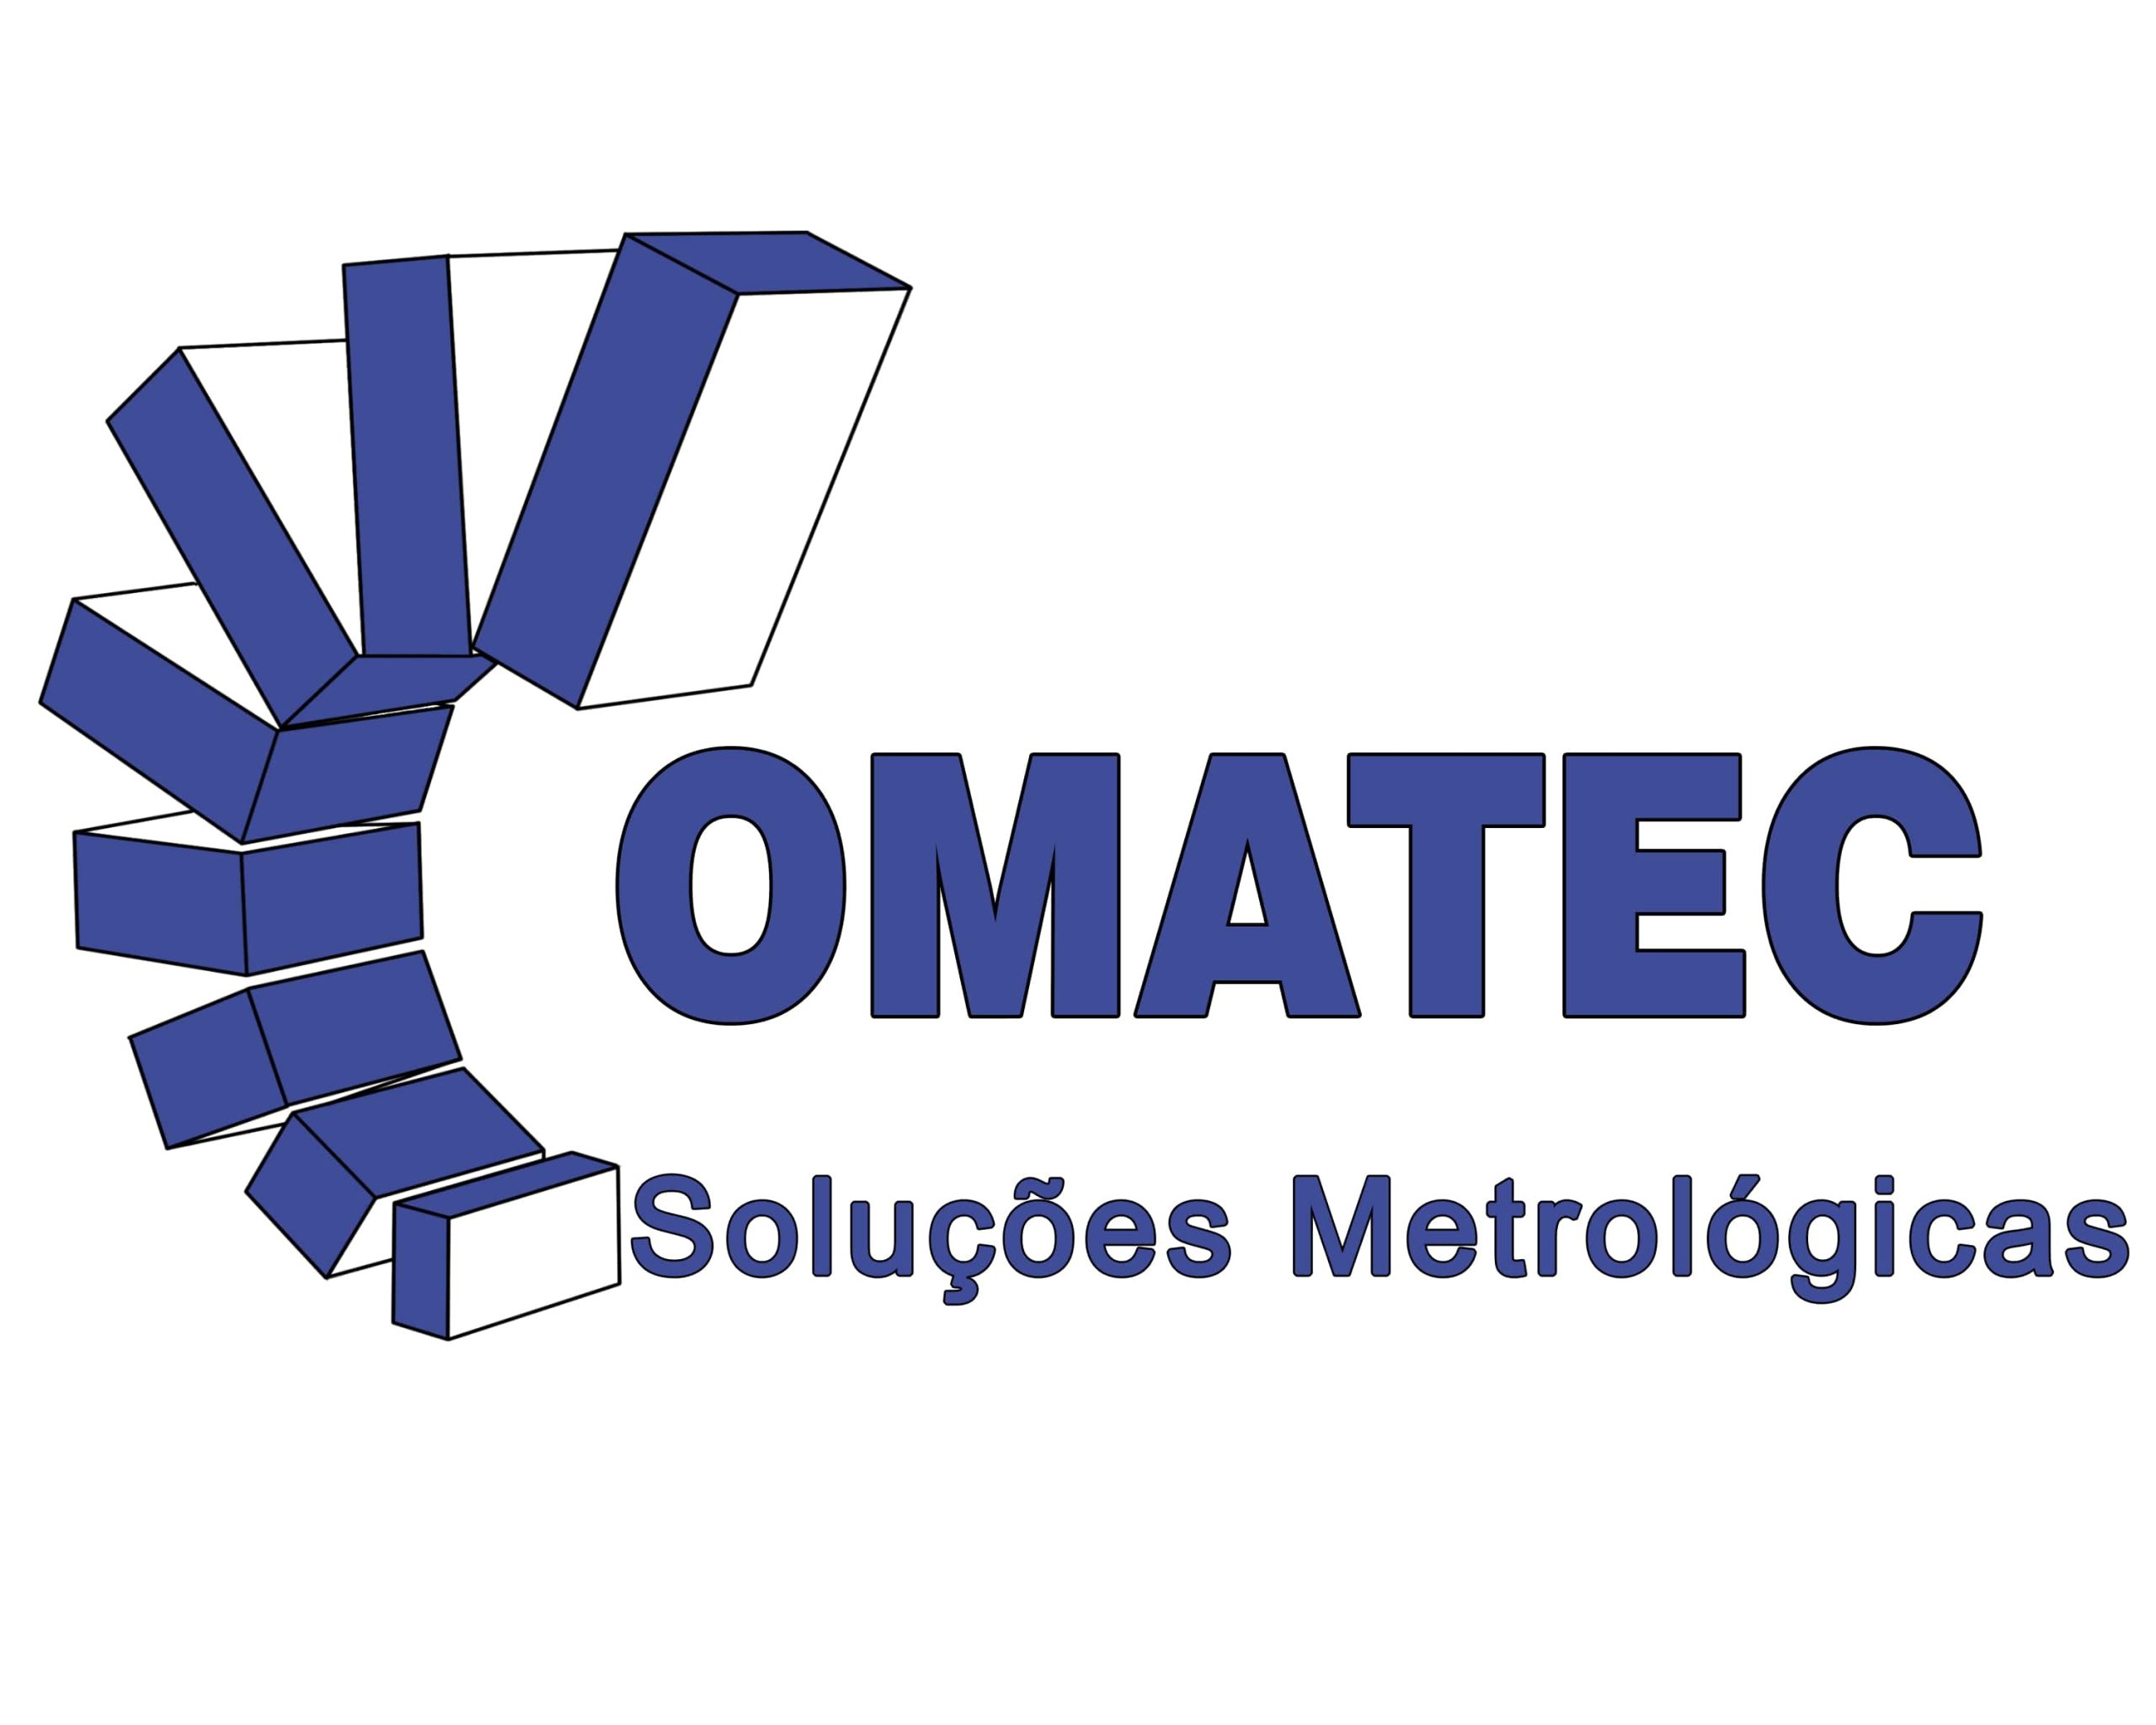 Logotipo - Comatec